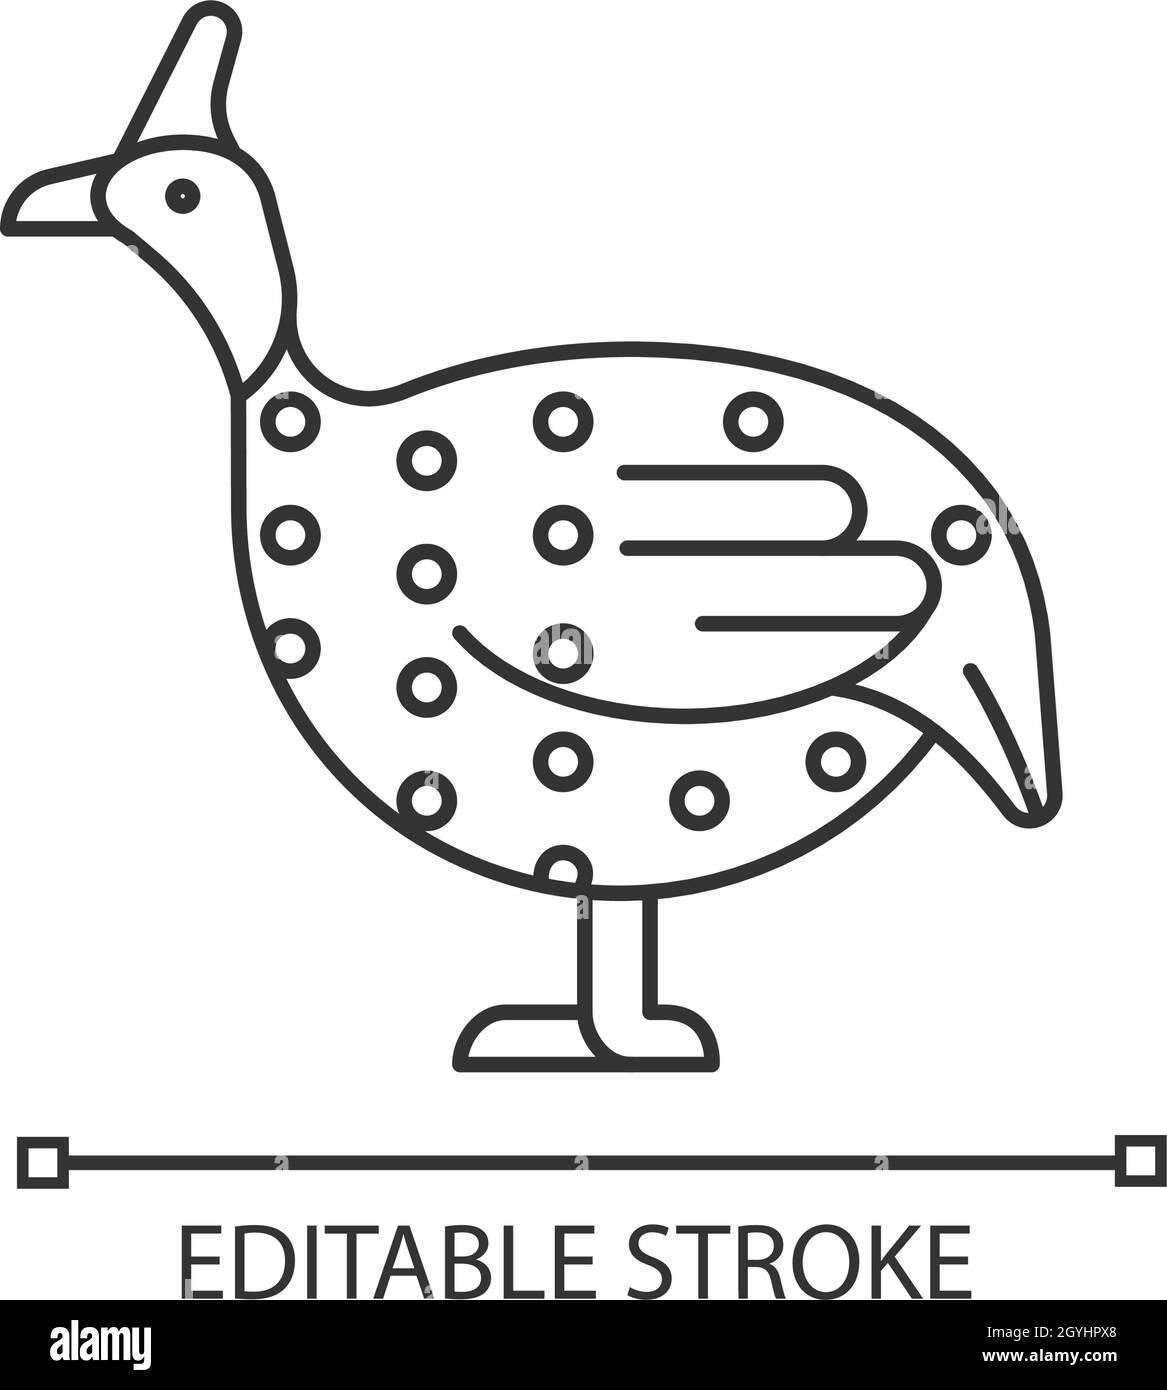 Guinea fowl linear icon Stock Vector